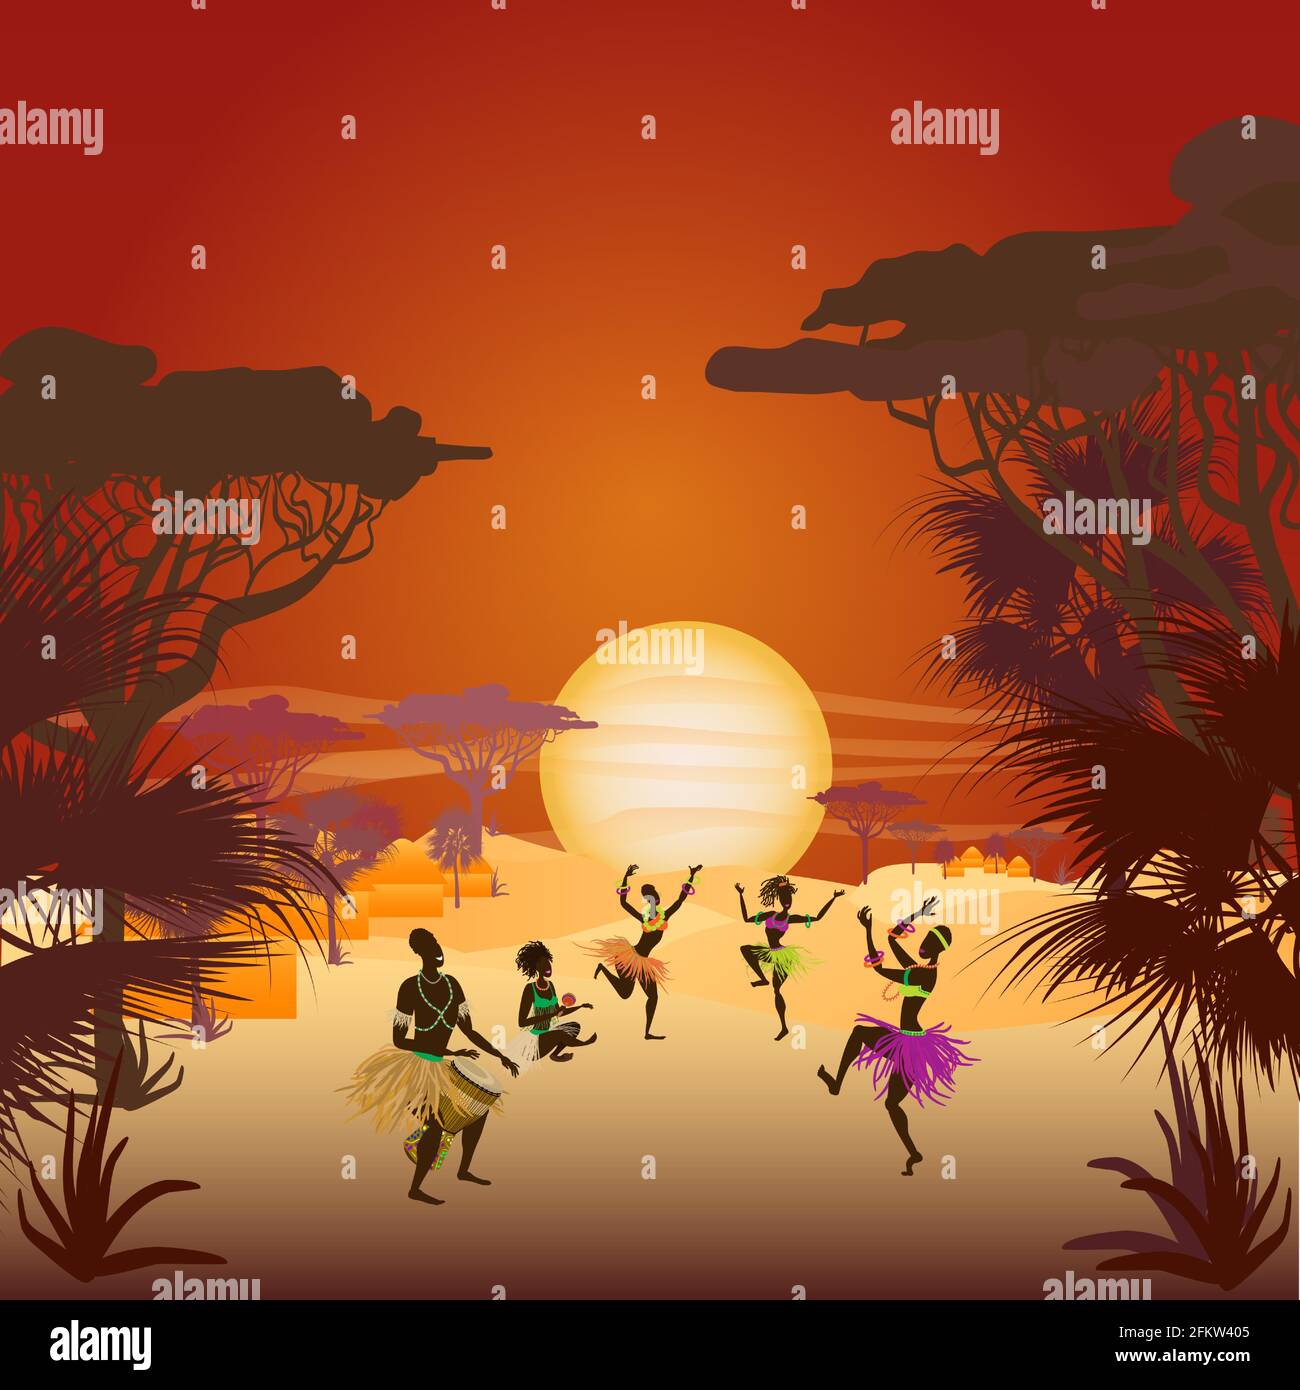 Coucher de soleil africain avec danses indigènes en costumes ethniques, soleil couchant, palmiers et savane. Illustration vectorielle. Illustration de Vecteur